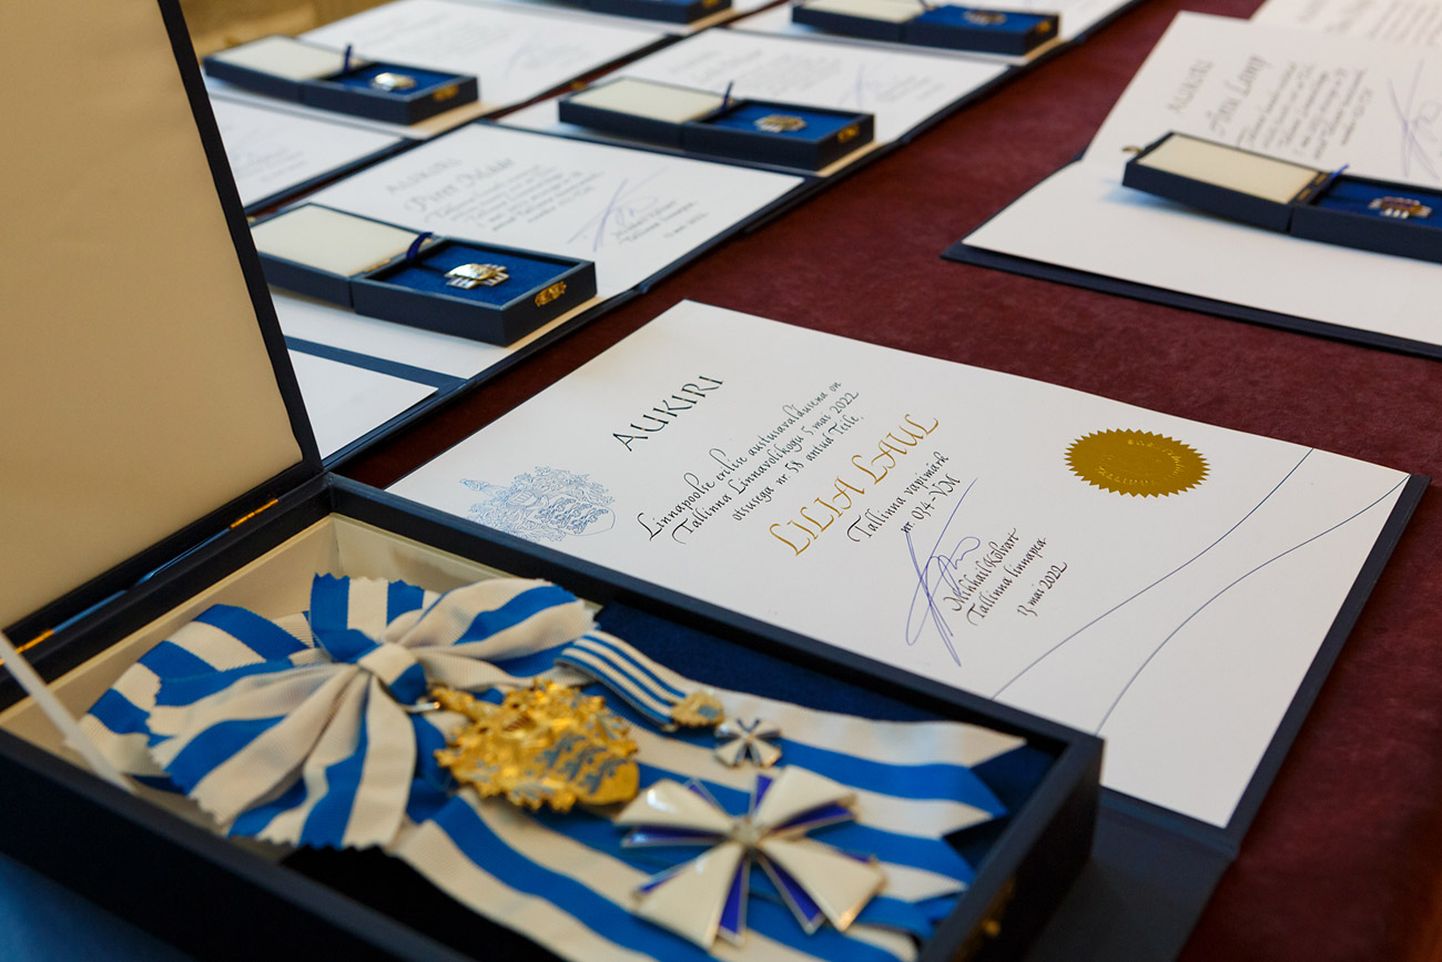 Мэр Таллинна Михаил Кылварт наградил лауреатов этого года знаком отличия и гербовым знаком Таллинна.